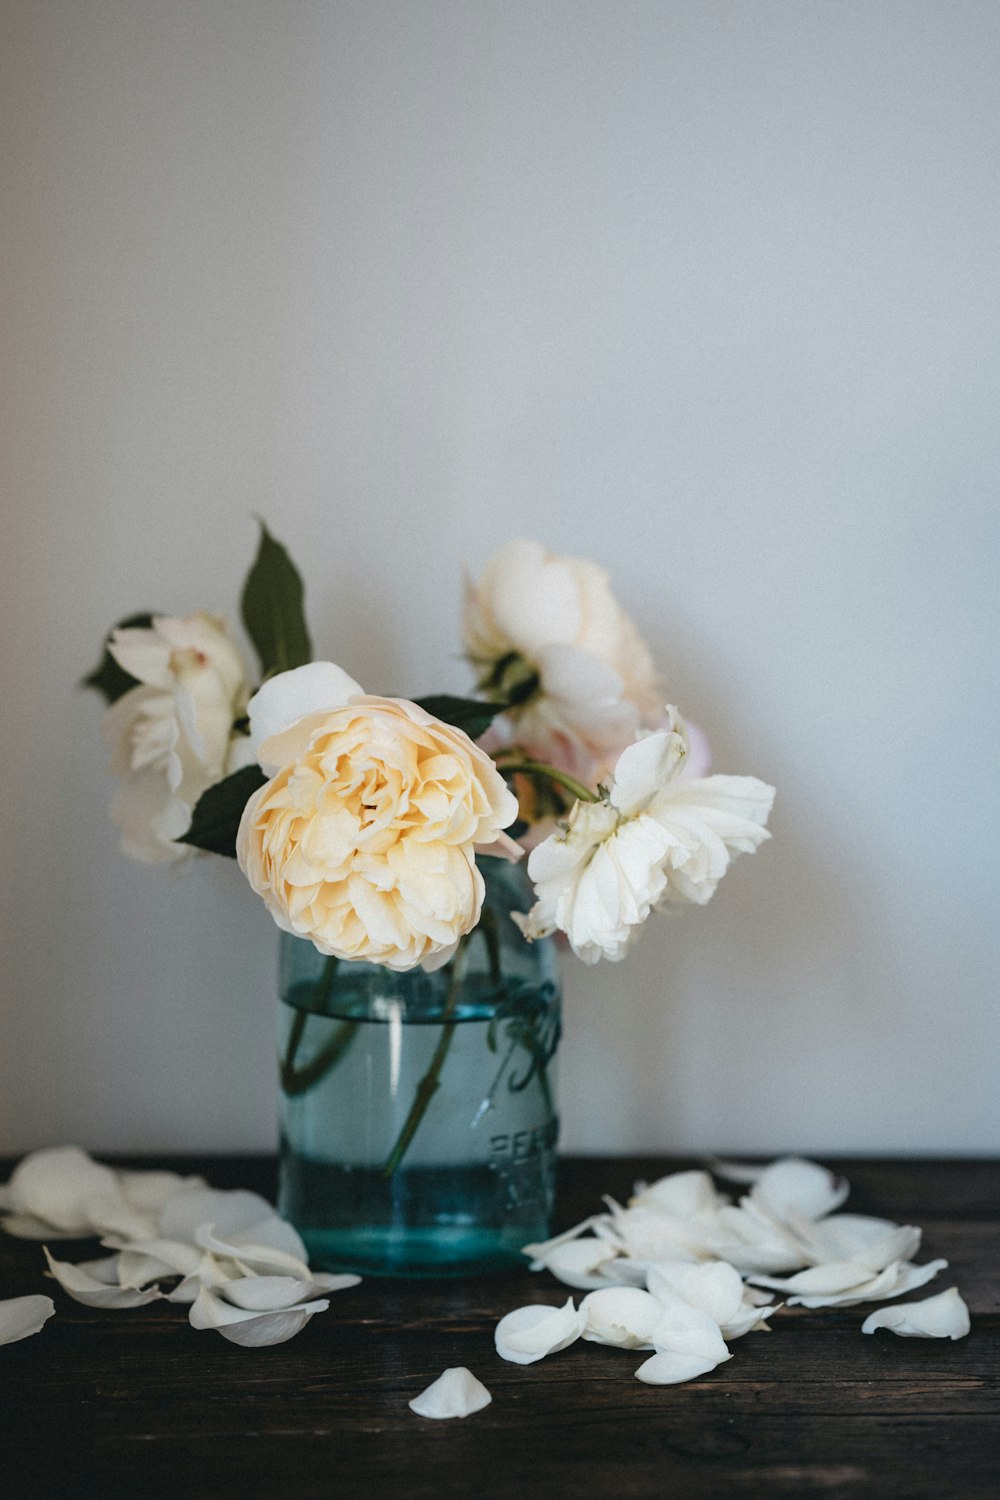 緑のガラスの花瓶に白い花